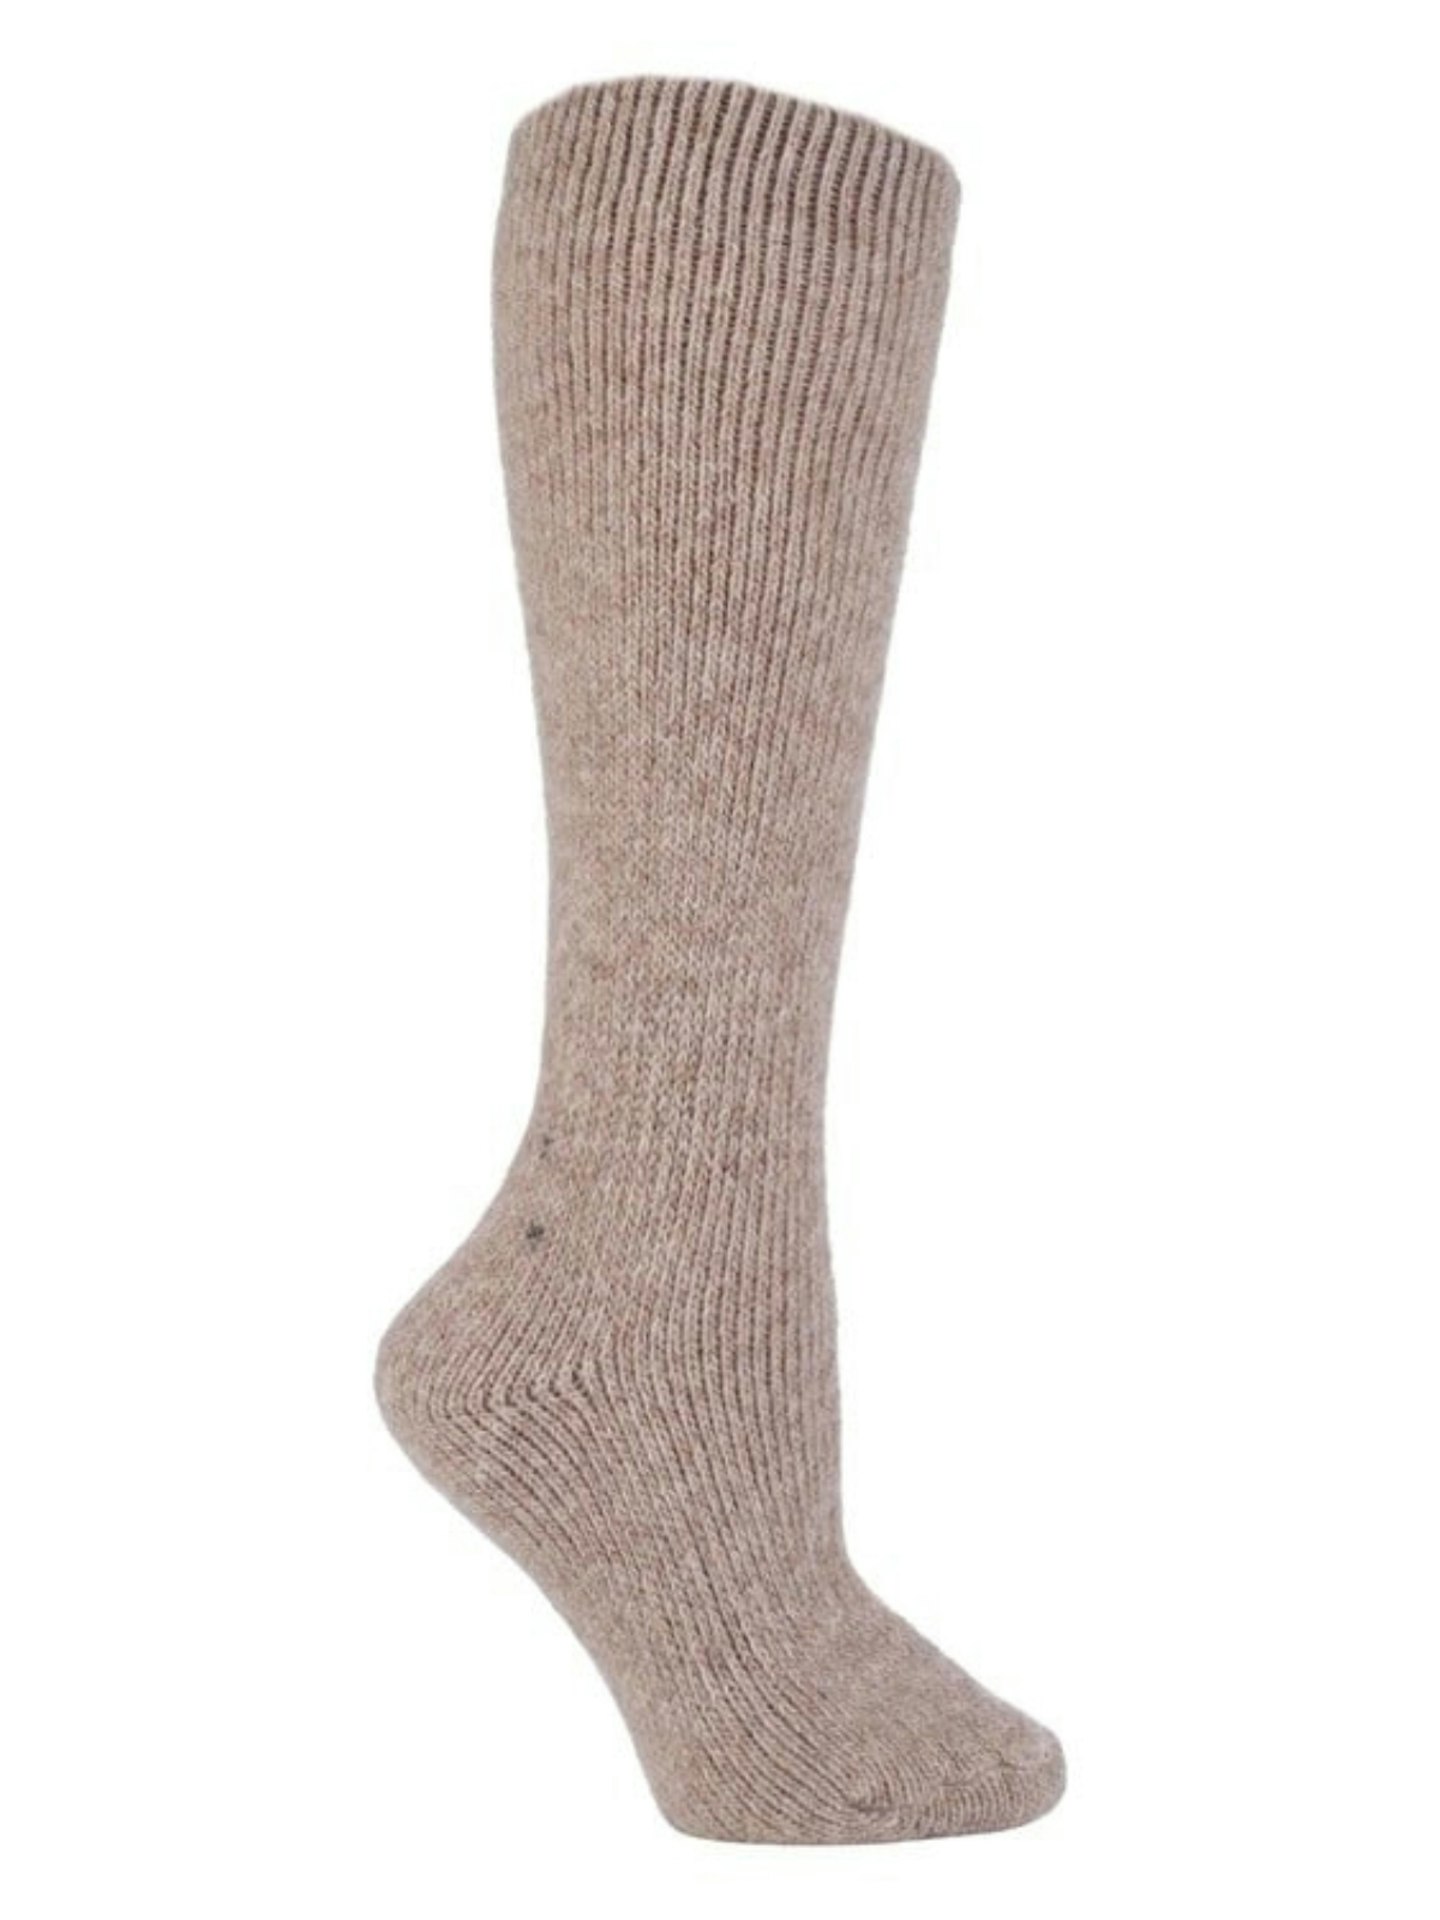 HEATTECH Thermal Socks